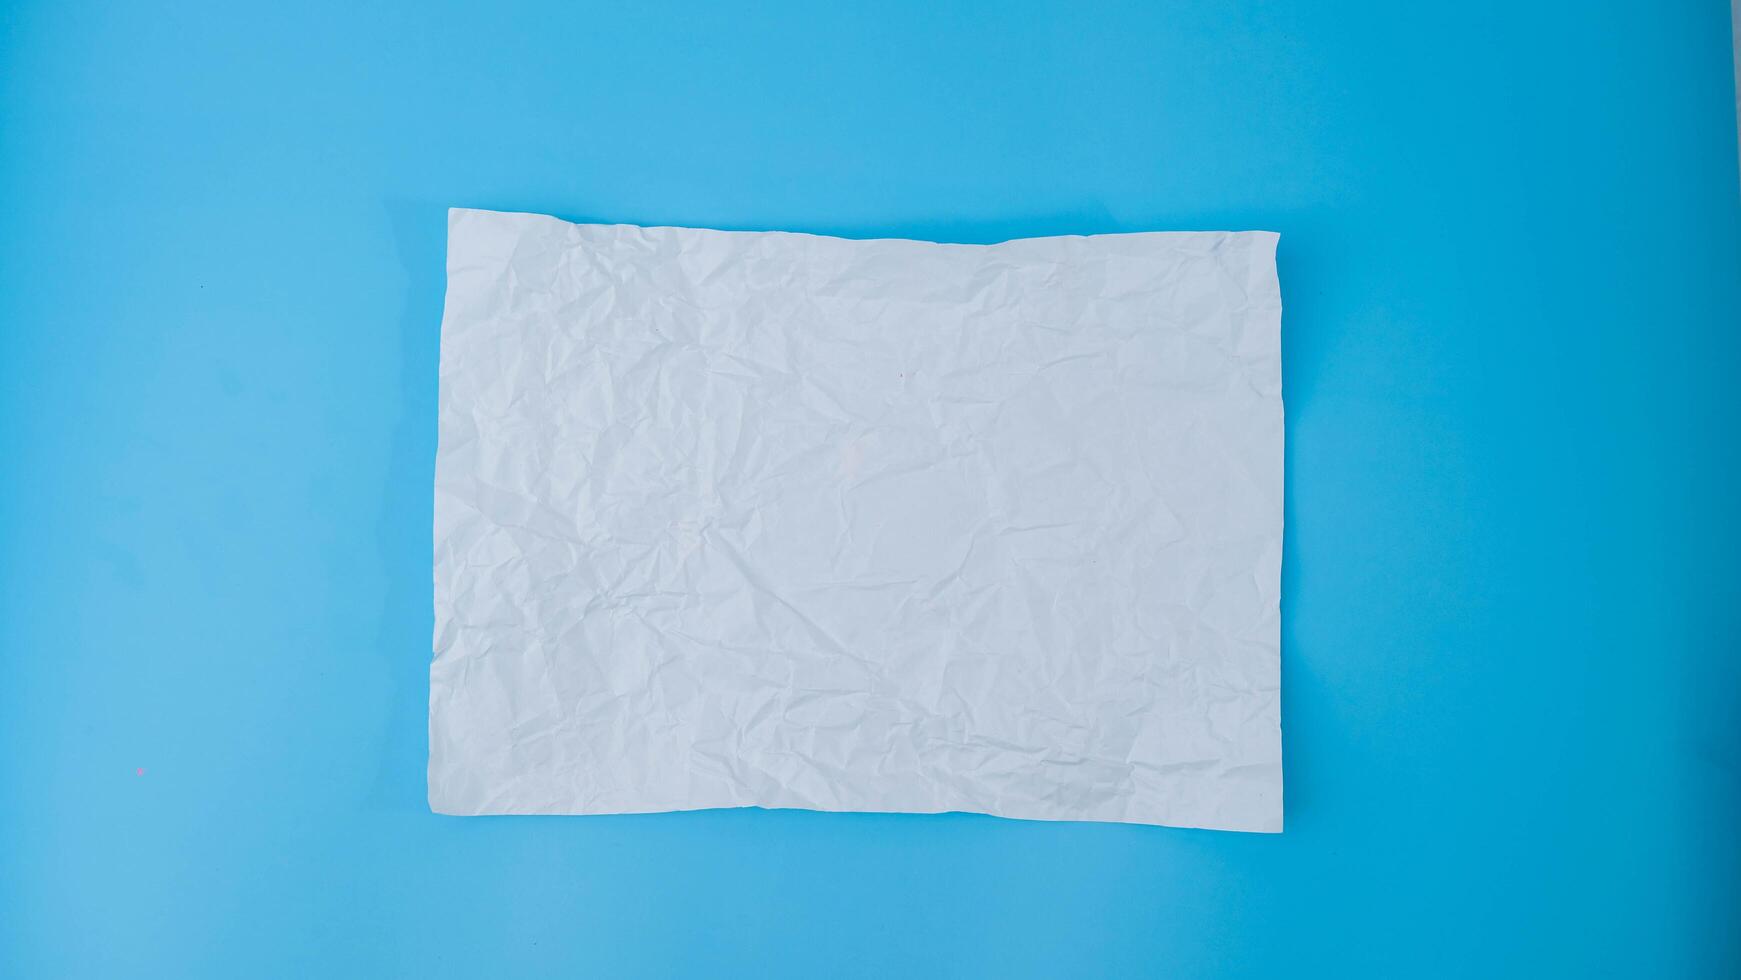 un papel pelota es untado fuera dentro un blanco sábana en azul antecedentes. estropeado blanco blanco papel con Copiar espacio para texto o publicidad espacio. foto